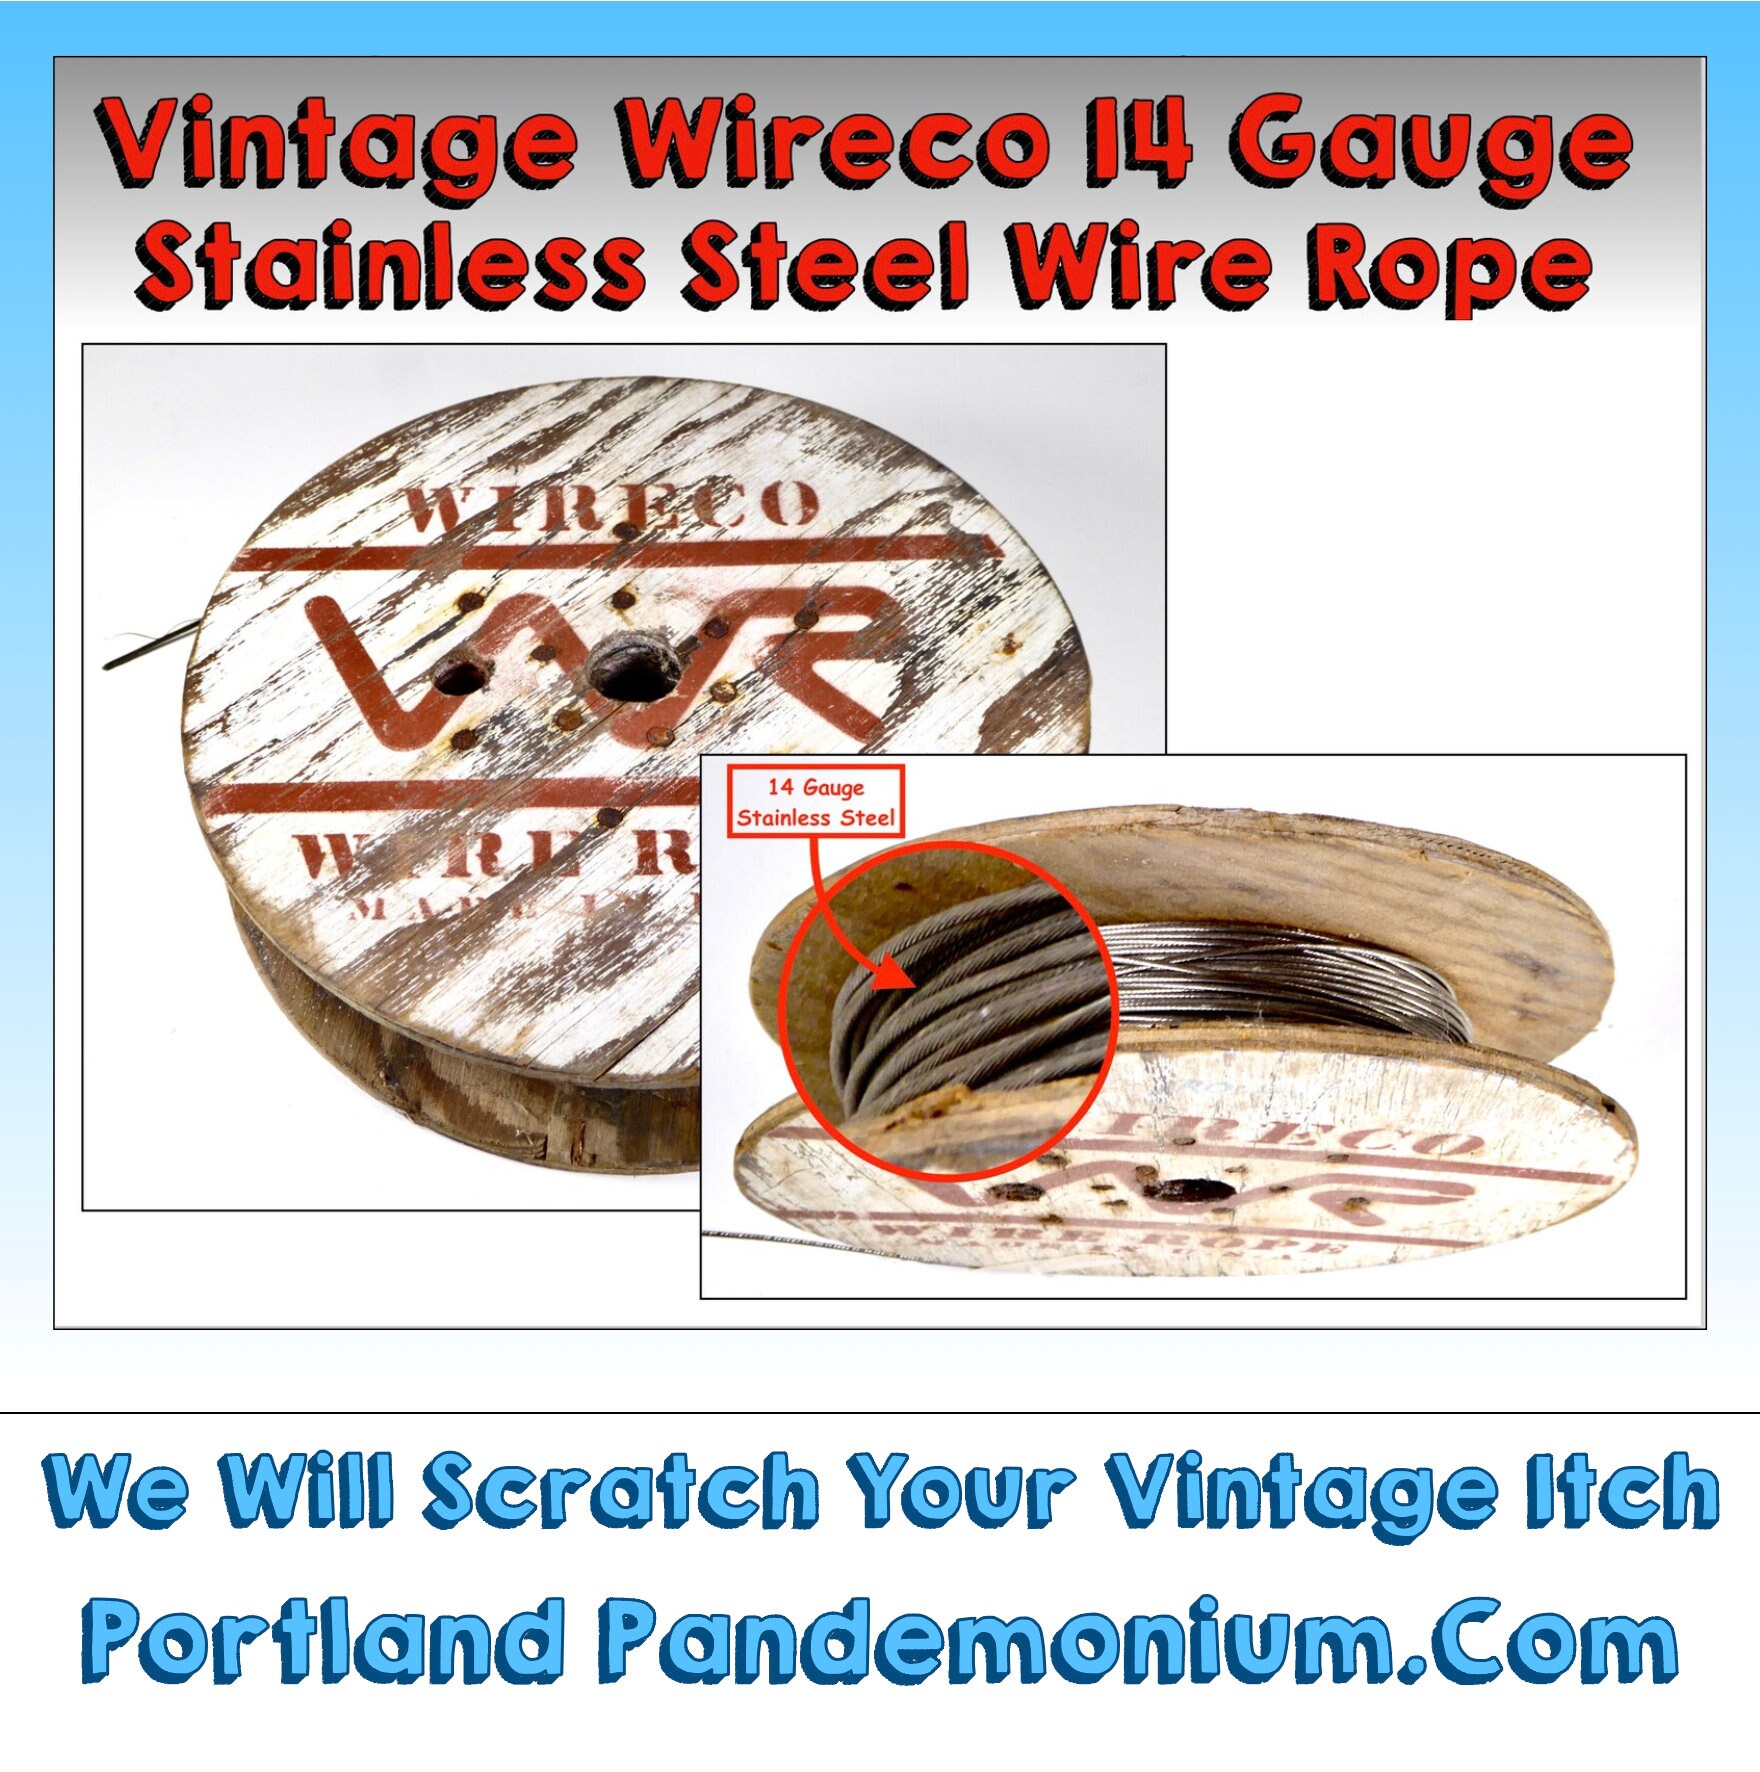 Vintage Reel of Stranded Stainless Steel Wire Rope, 14 Gauge 1.6mm